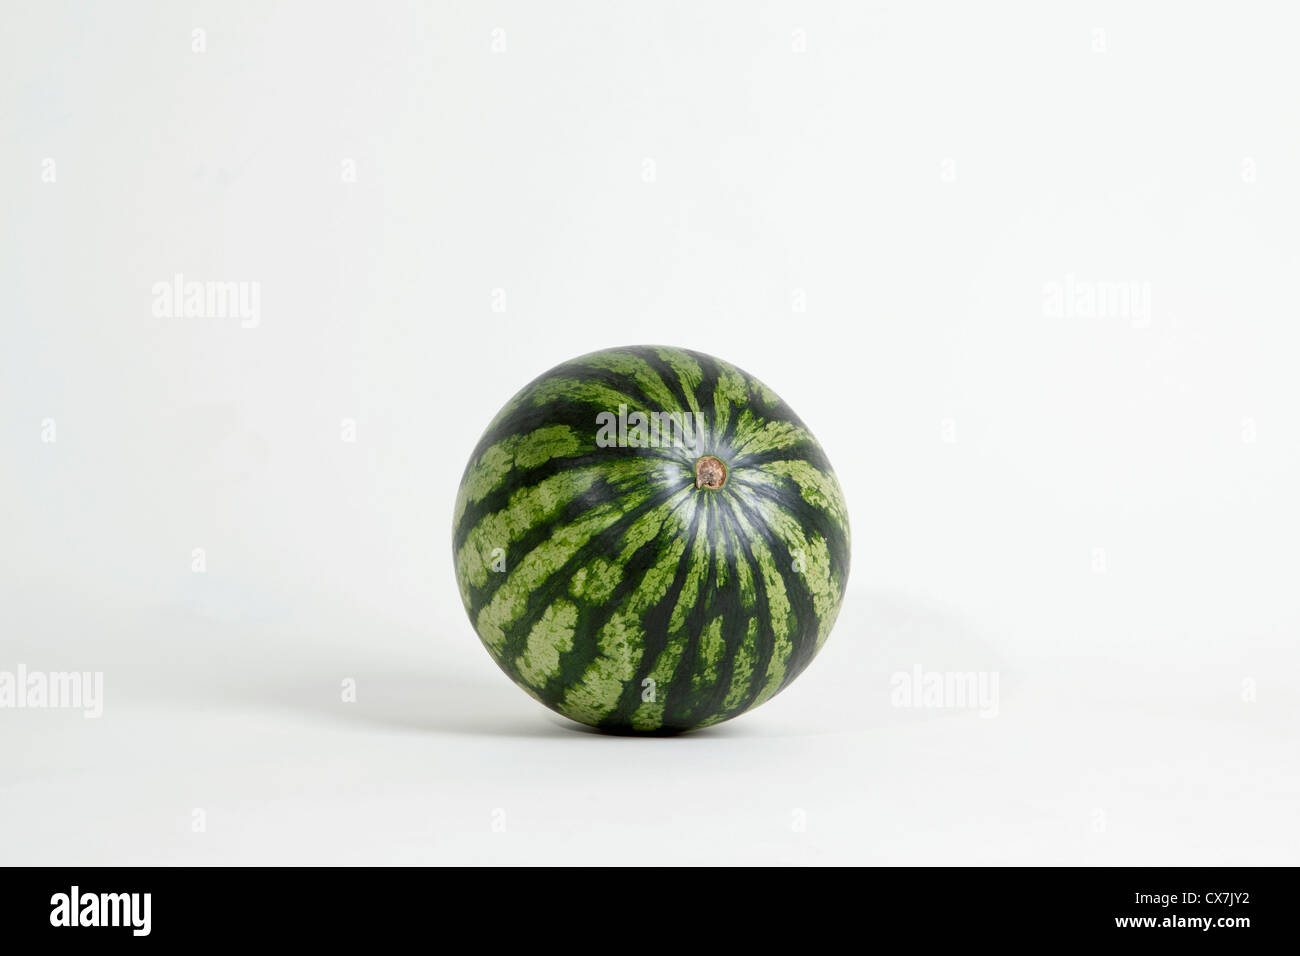 A whole ripe watermelon, studio shot Stock Photo